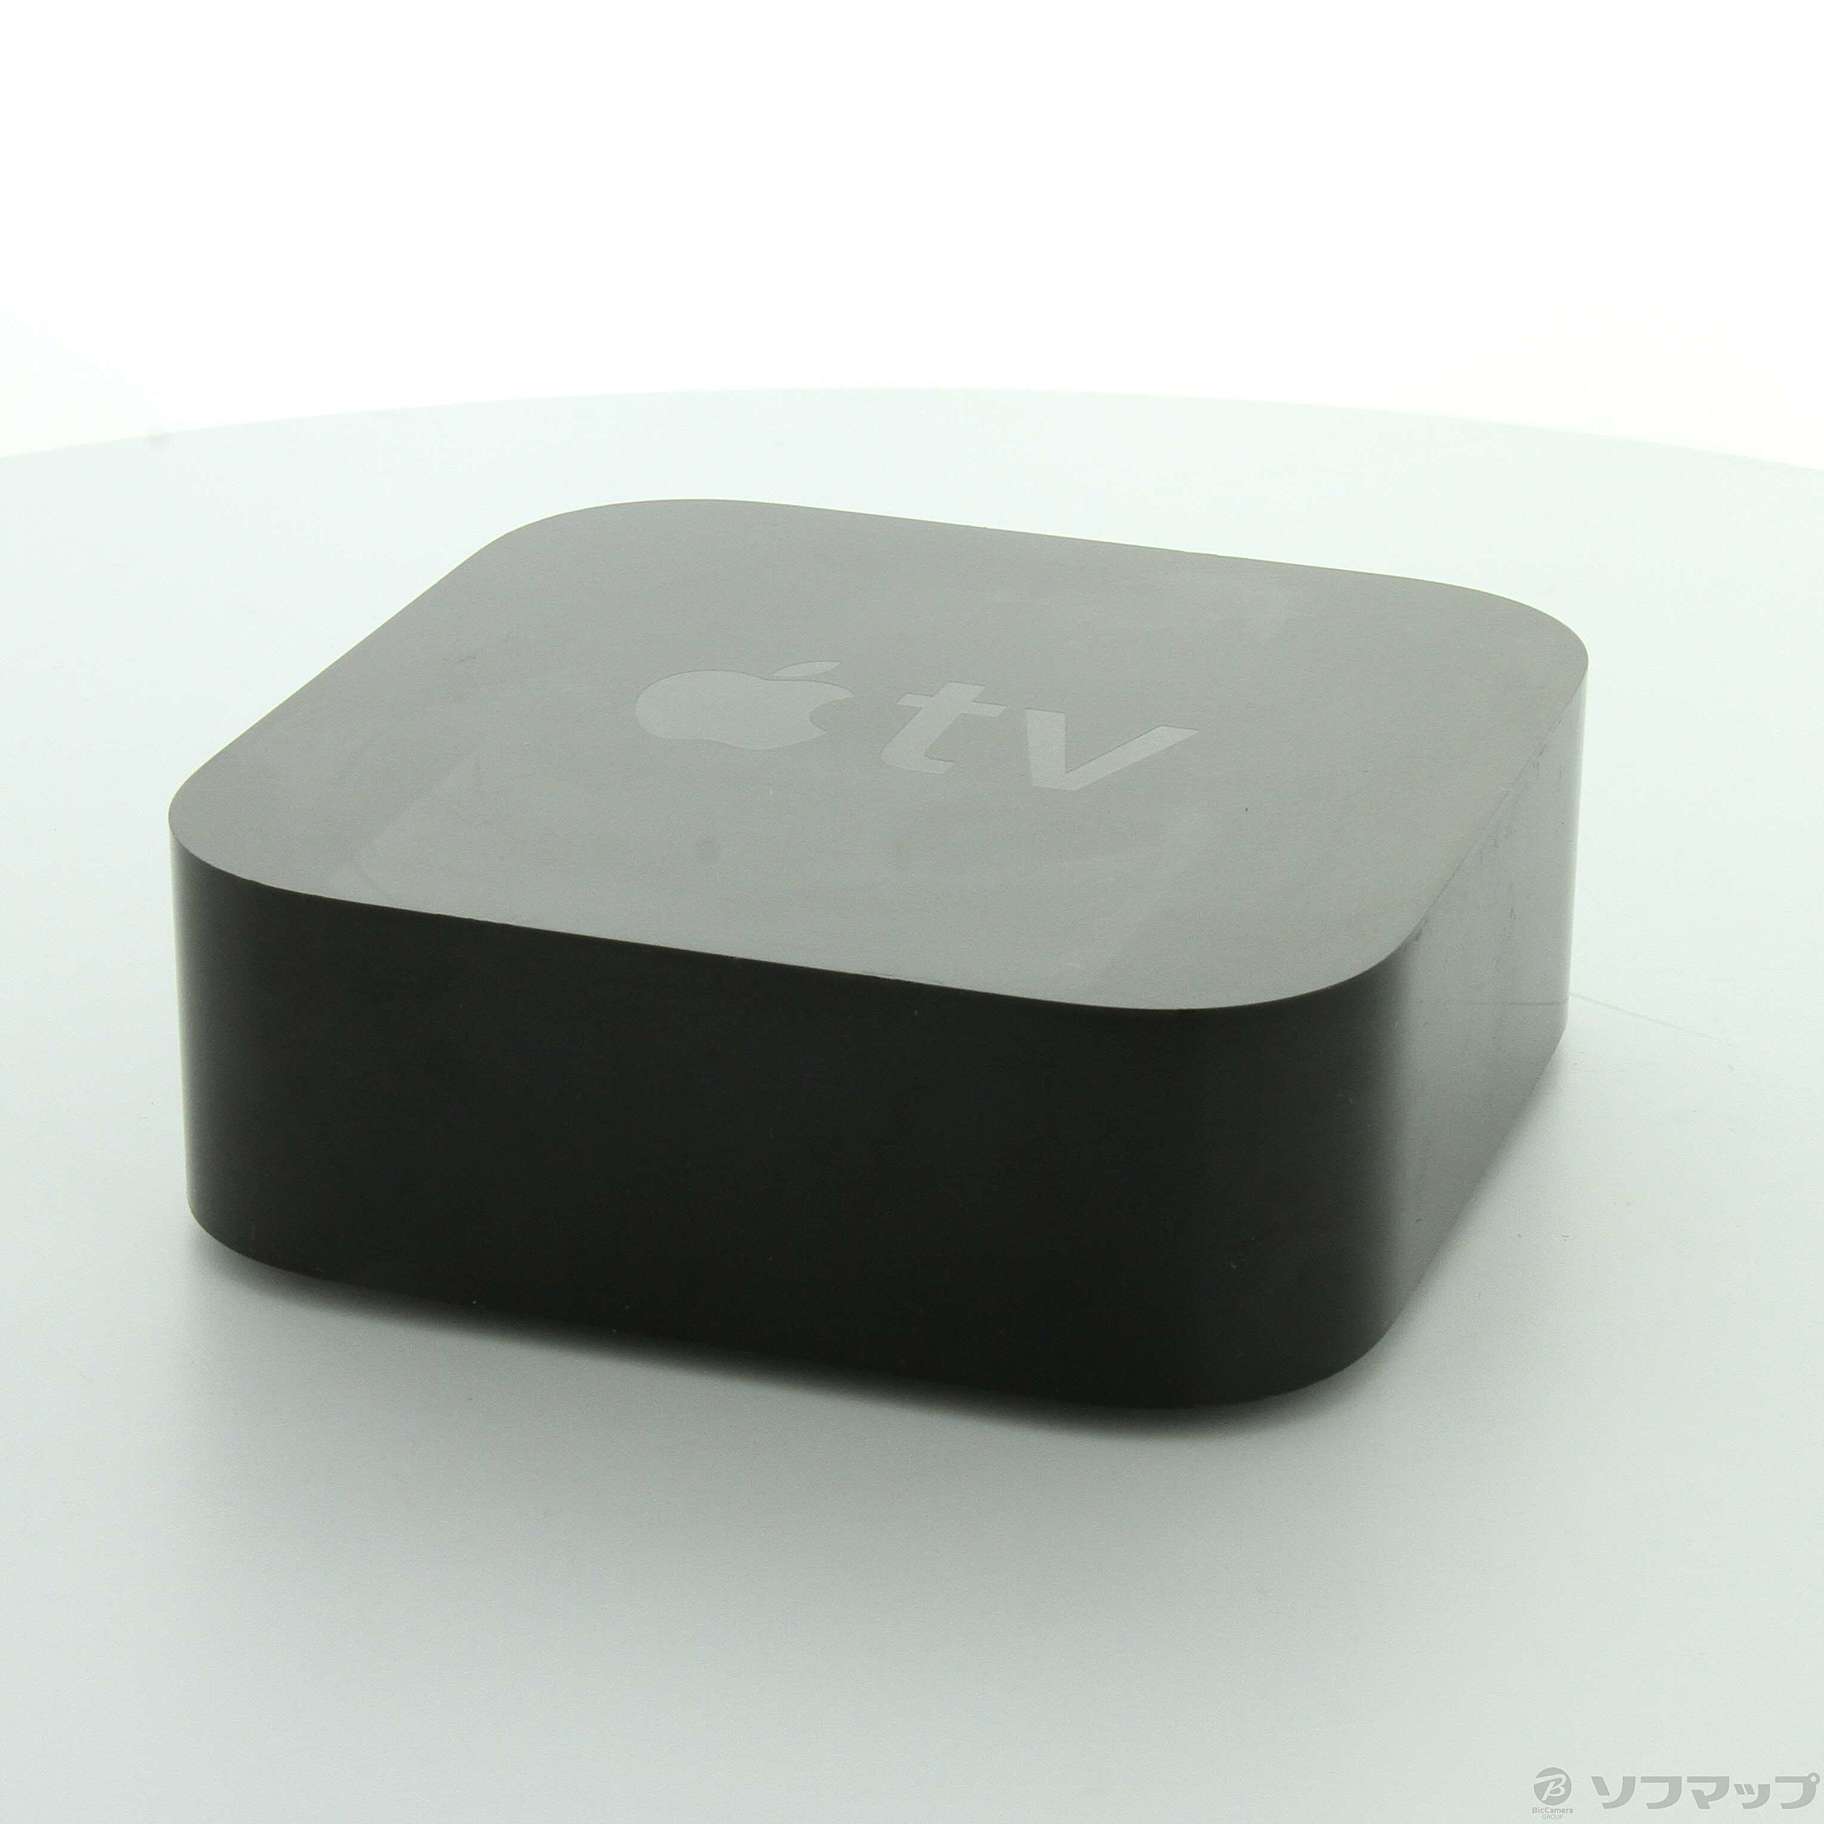 (中古)Apple Apple TV 4K 64GB MP7P2J/A(297-ud)